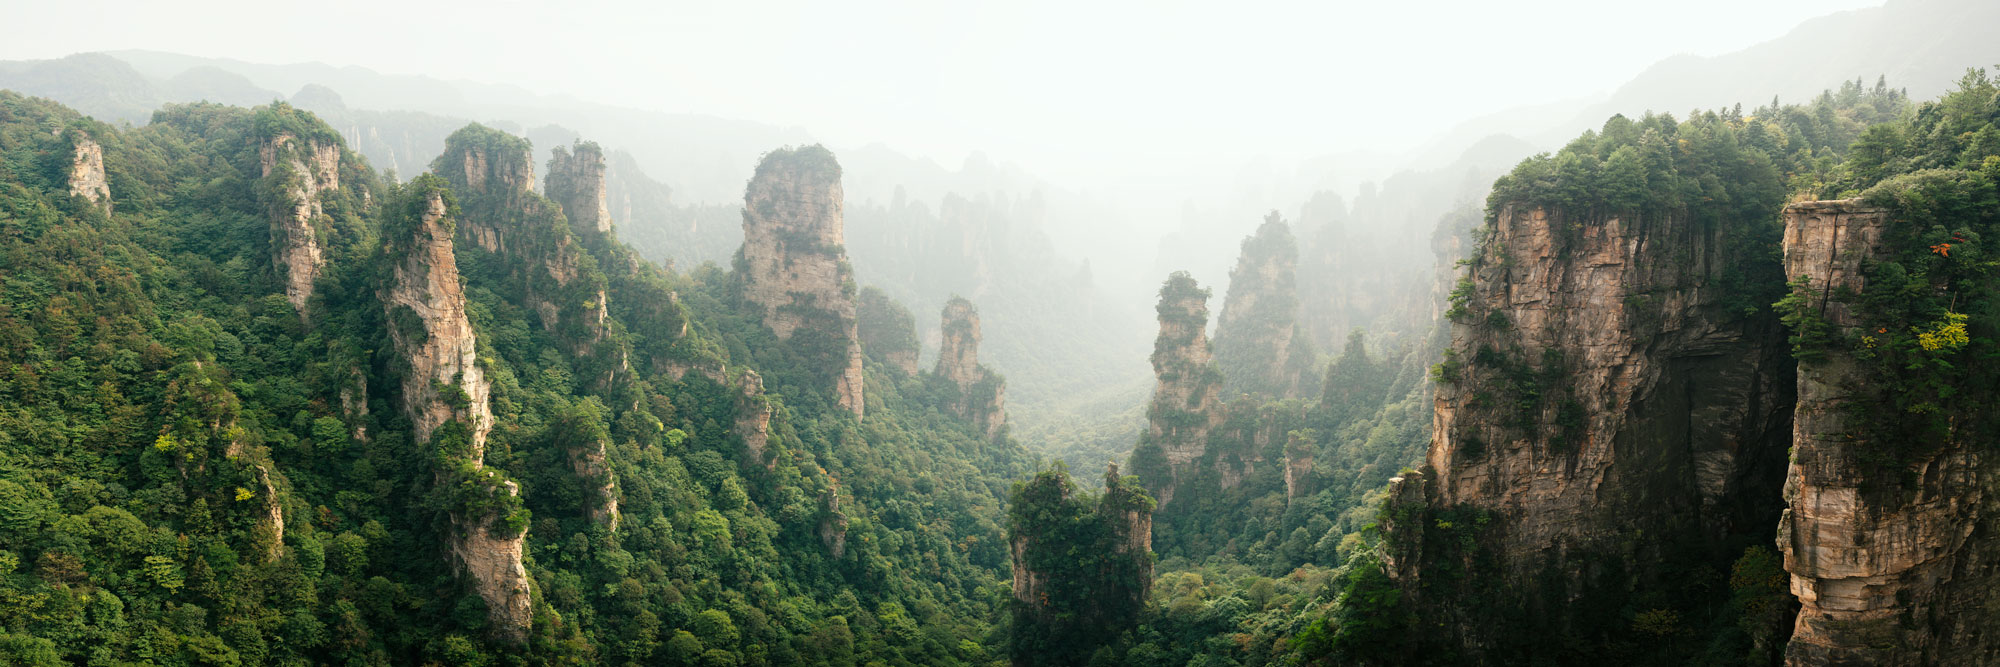 Panorama of the Pillars of Zhangjiajie National park from the Avatar Movie in China